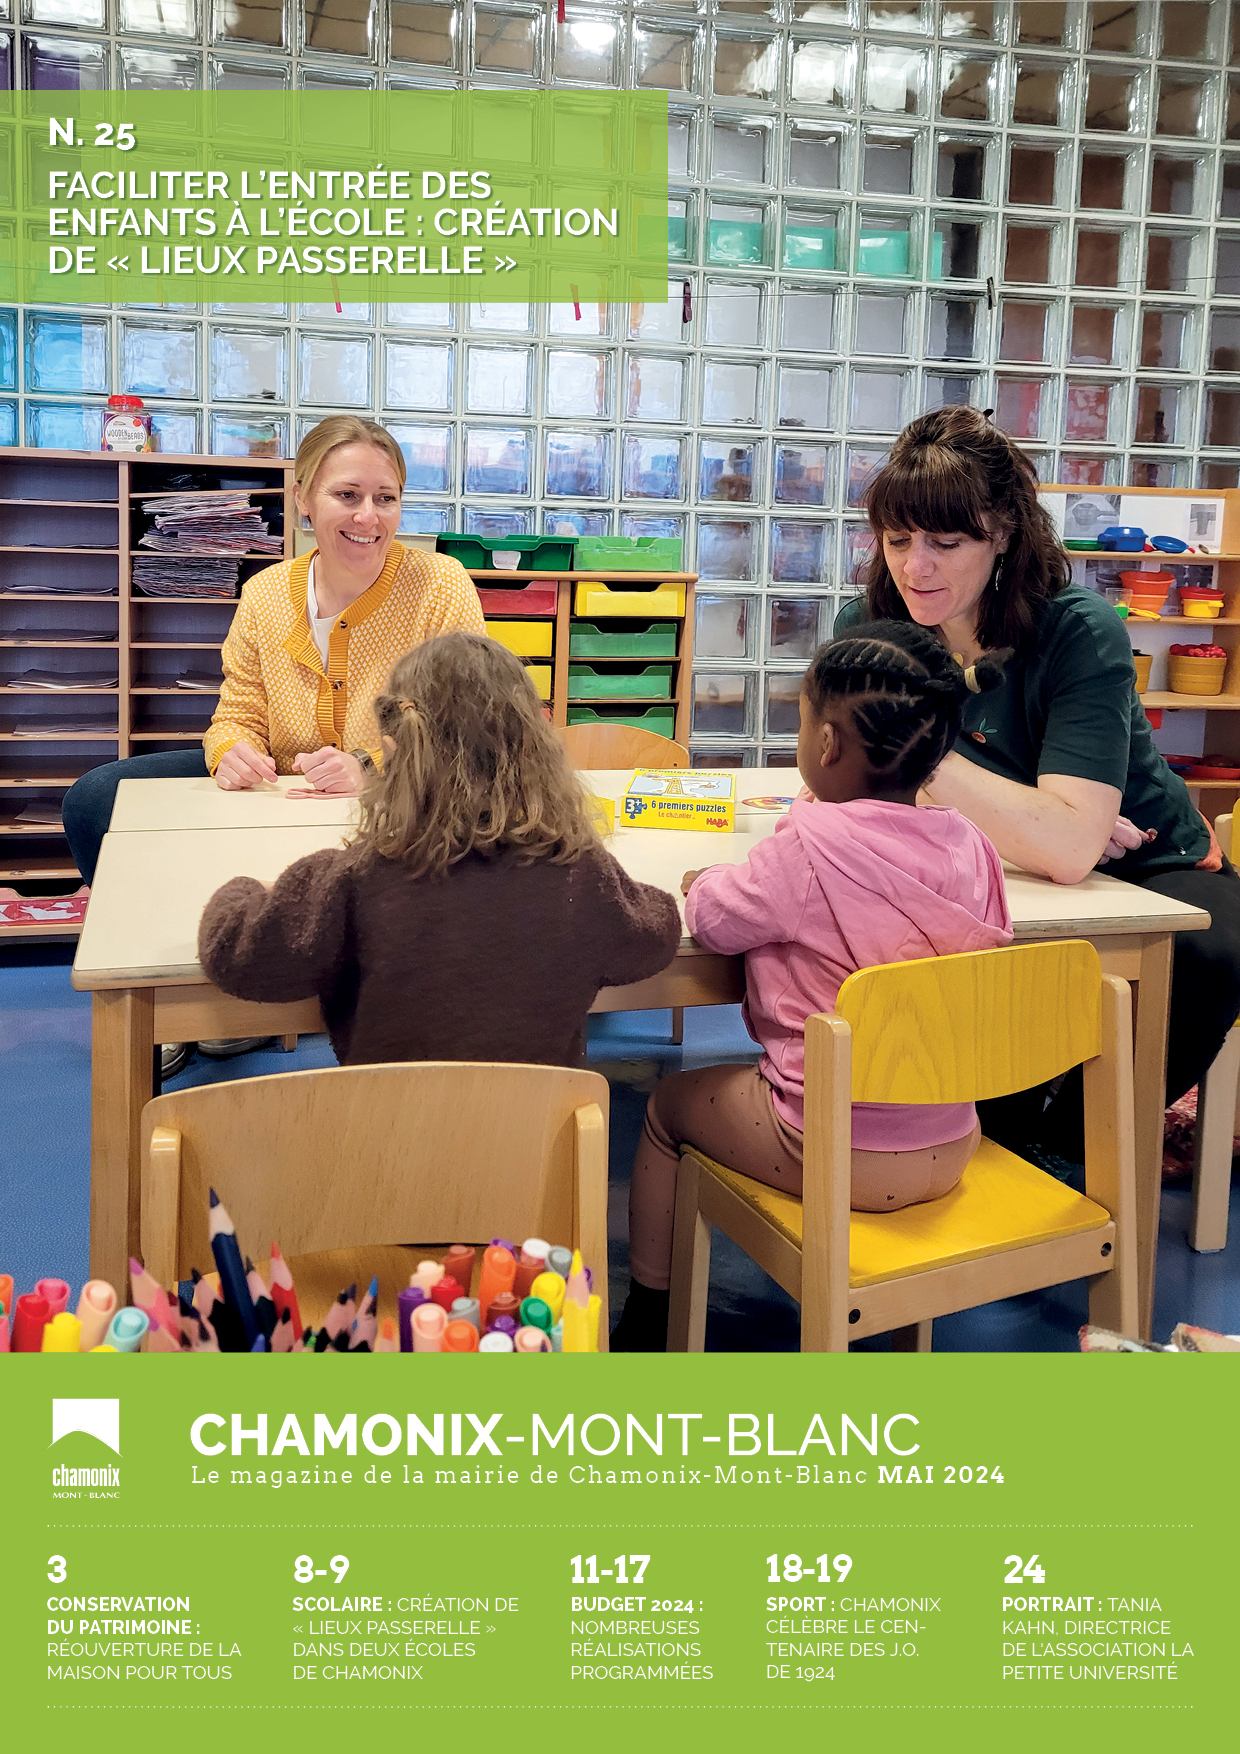 Le bulletin municipal de Chamonix-Mont-Blanc du mois de mai 2024 est disponible en ligne !